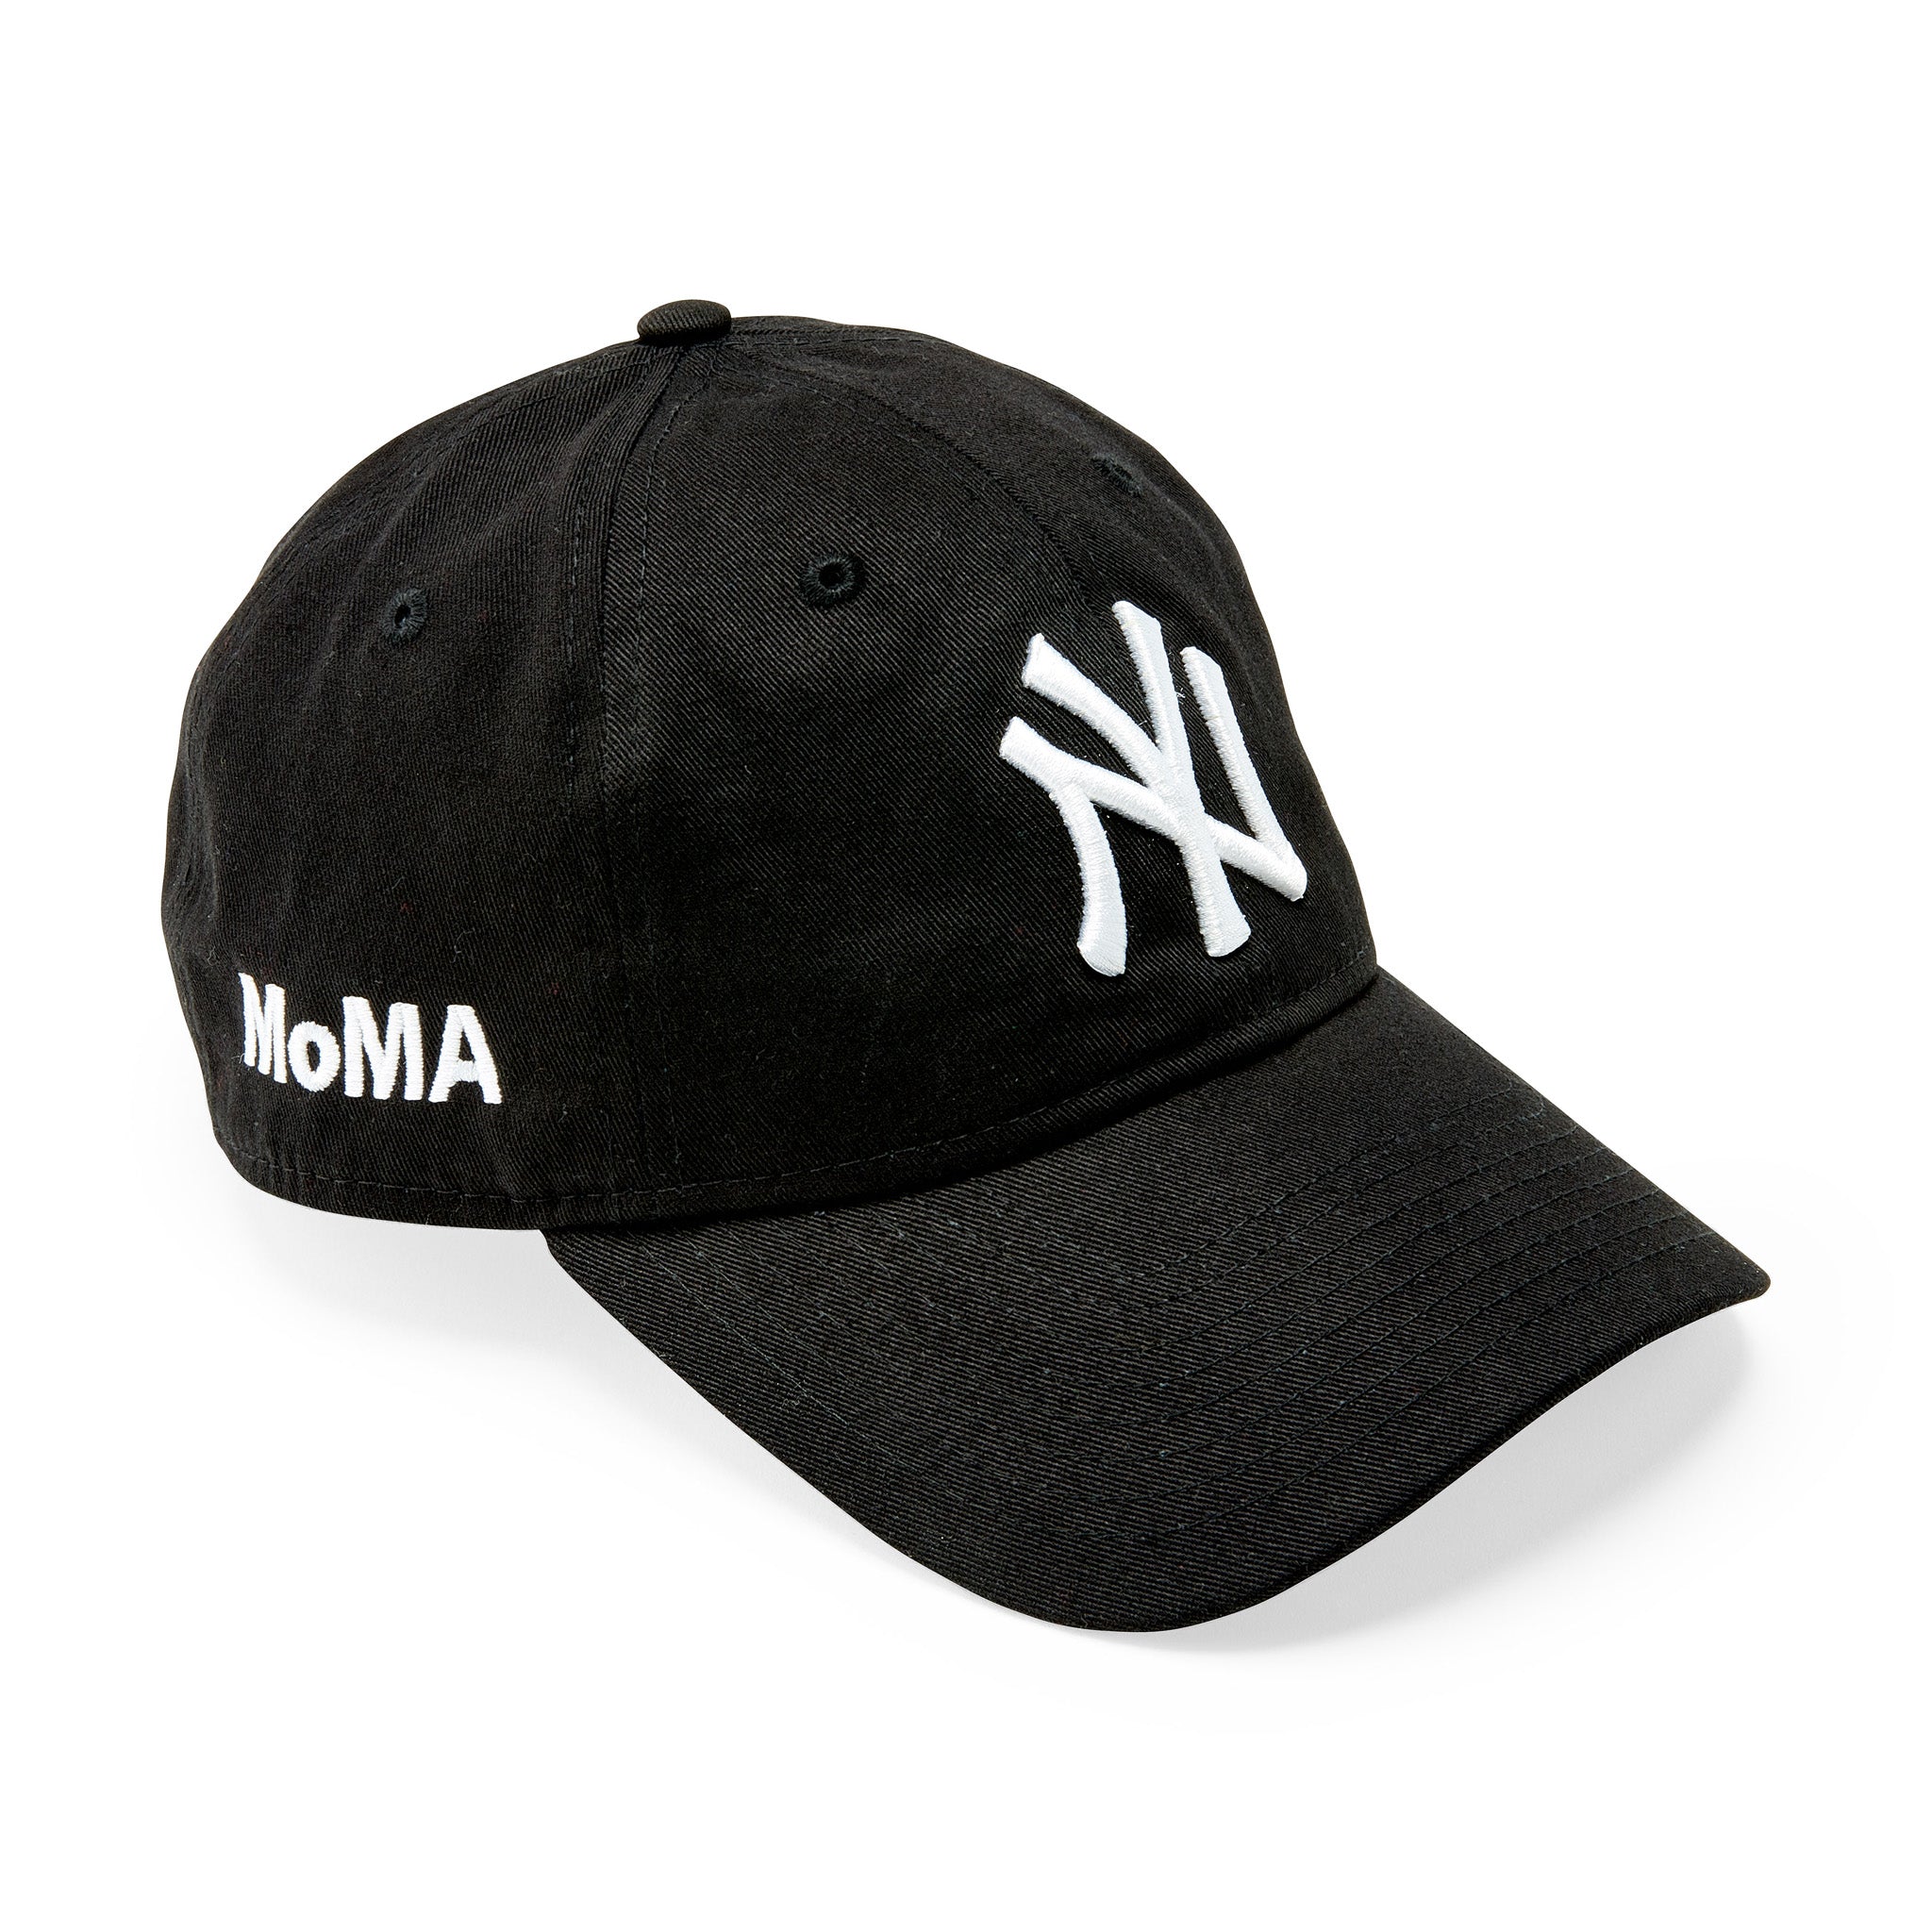 Moma NY Yankees Adjustable Baseball Cap - Black by New Era | One Size | Black